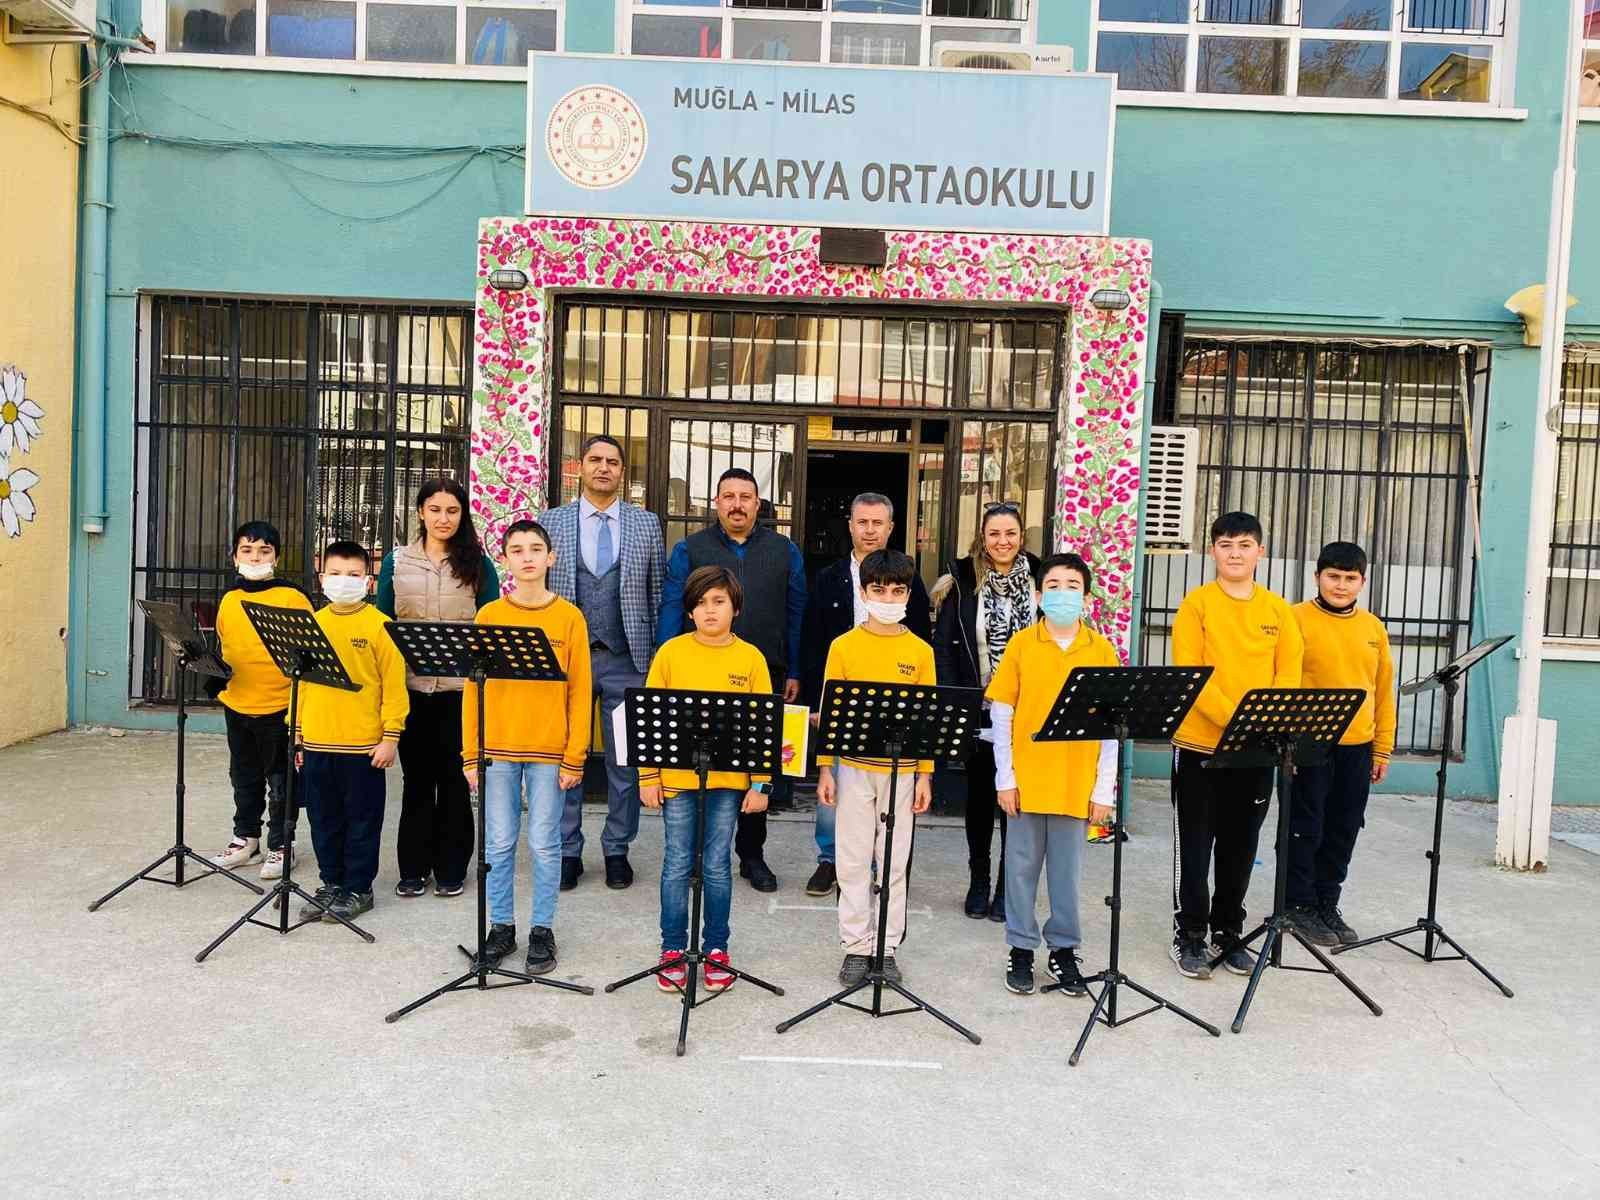 Milas Yörük Türkmen Kültür Derneği’nden müzik odasına destek #mugla